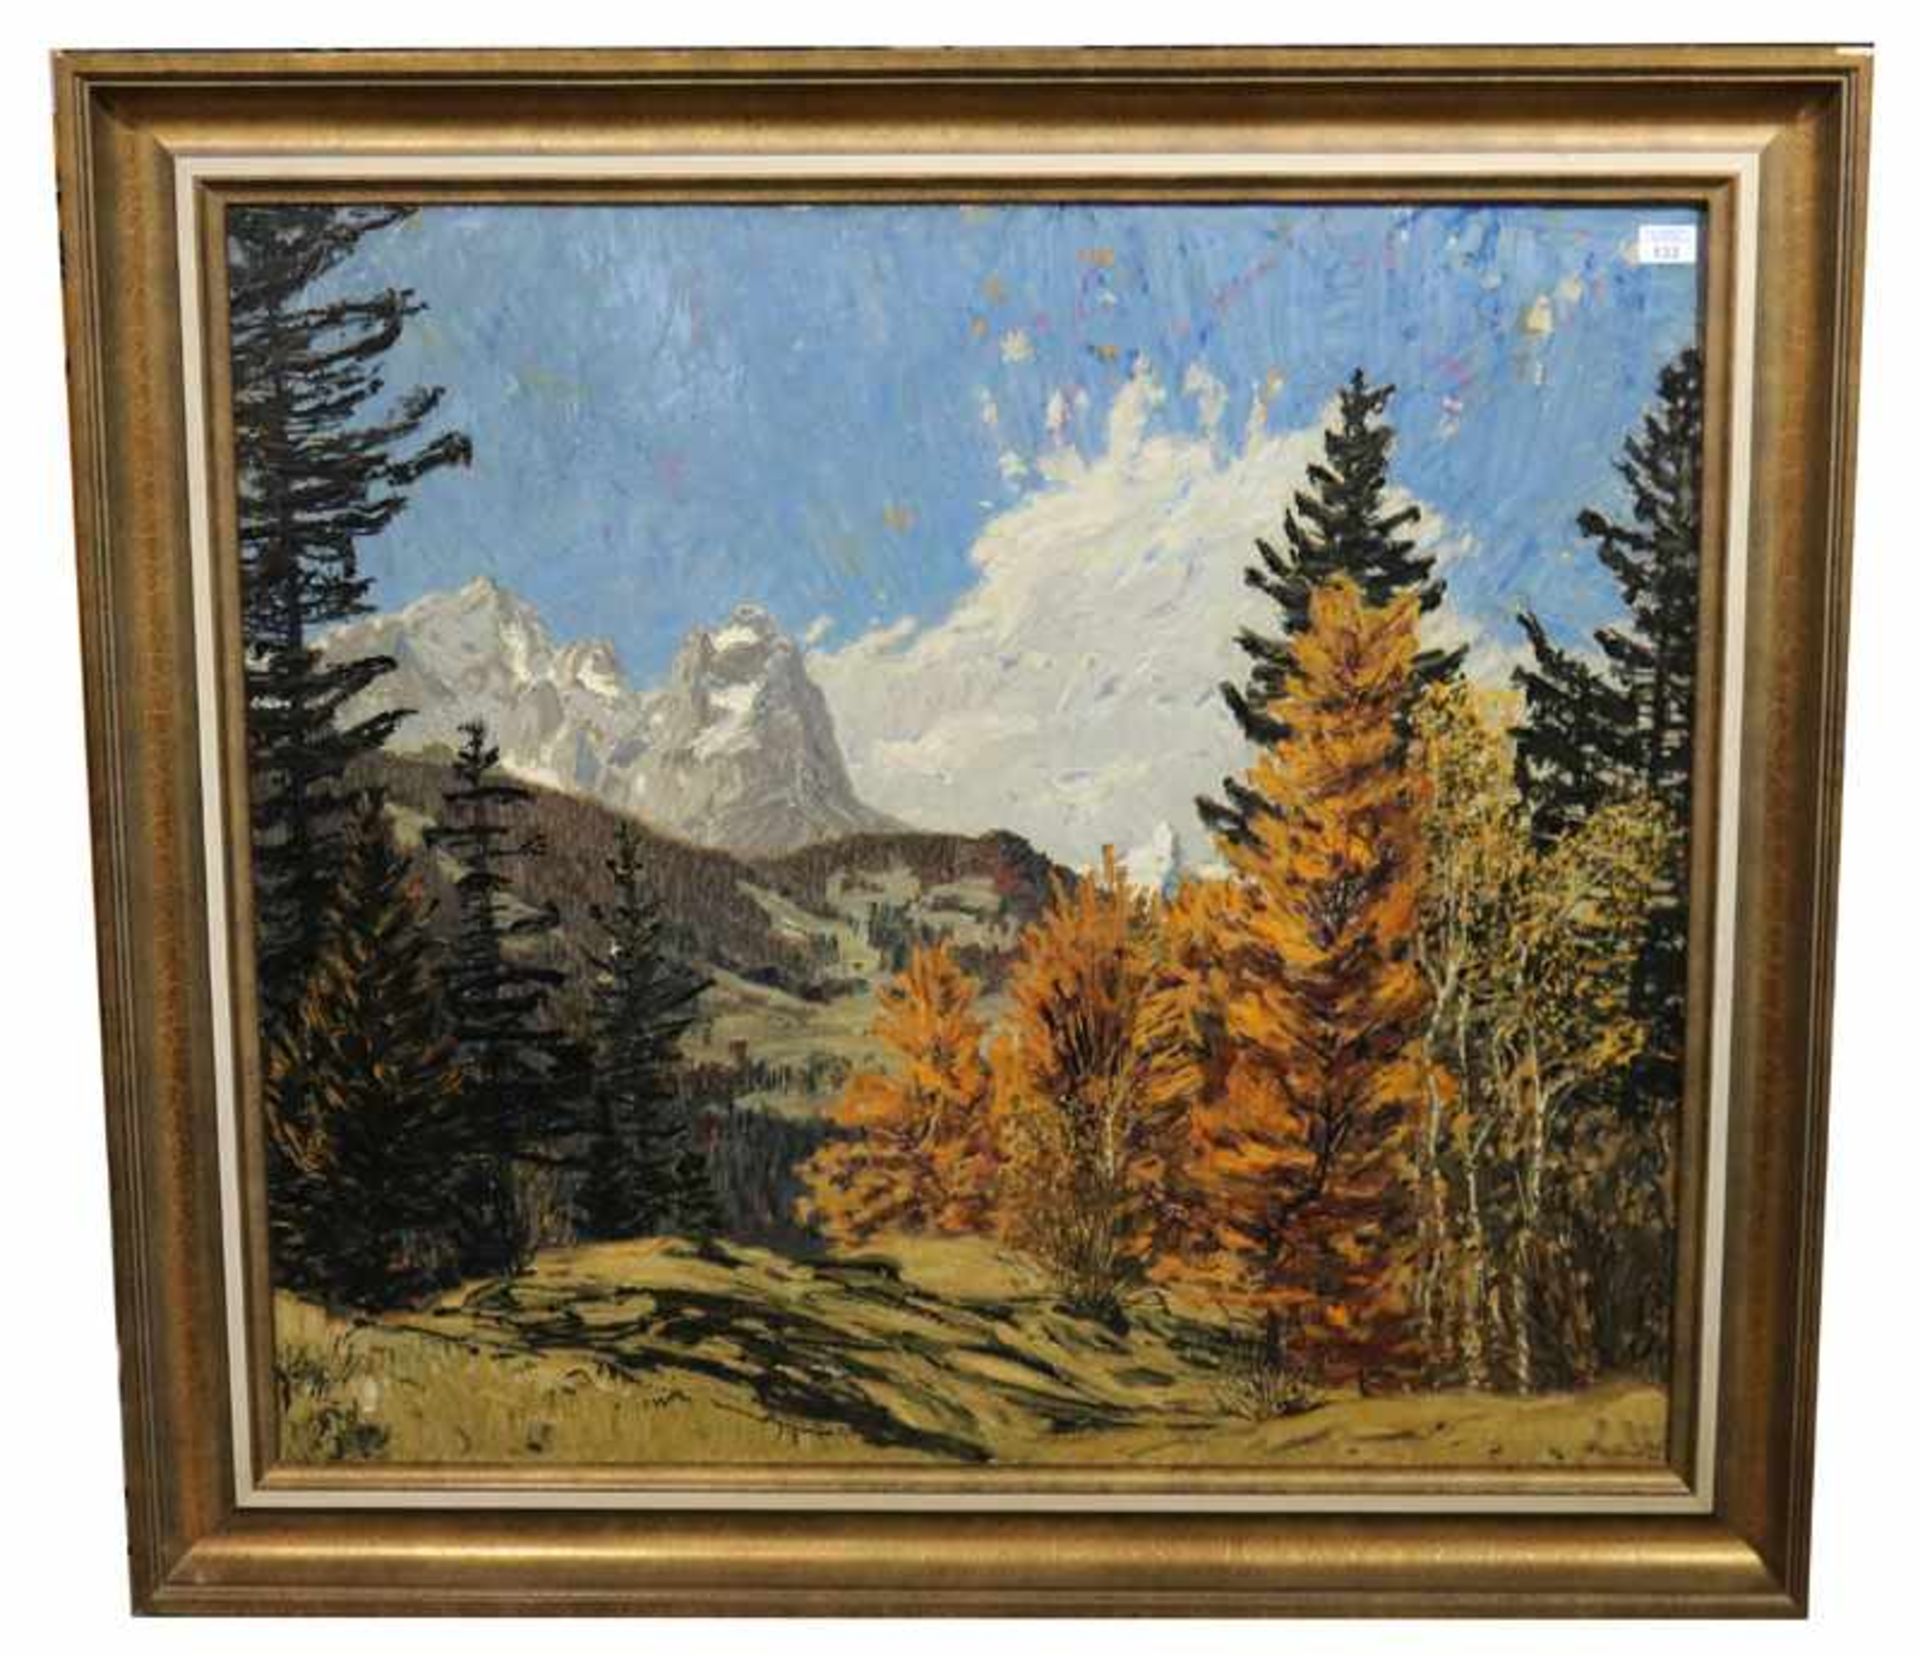 Gemälde ÖL/LW 'Blick auf Zugspitzgruppe', signiert Bauriedel, Otto, * 1881 München + 1961,